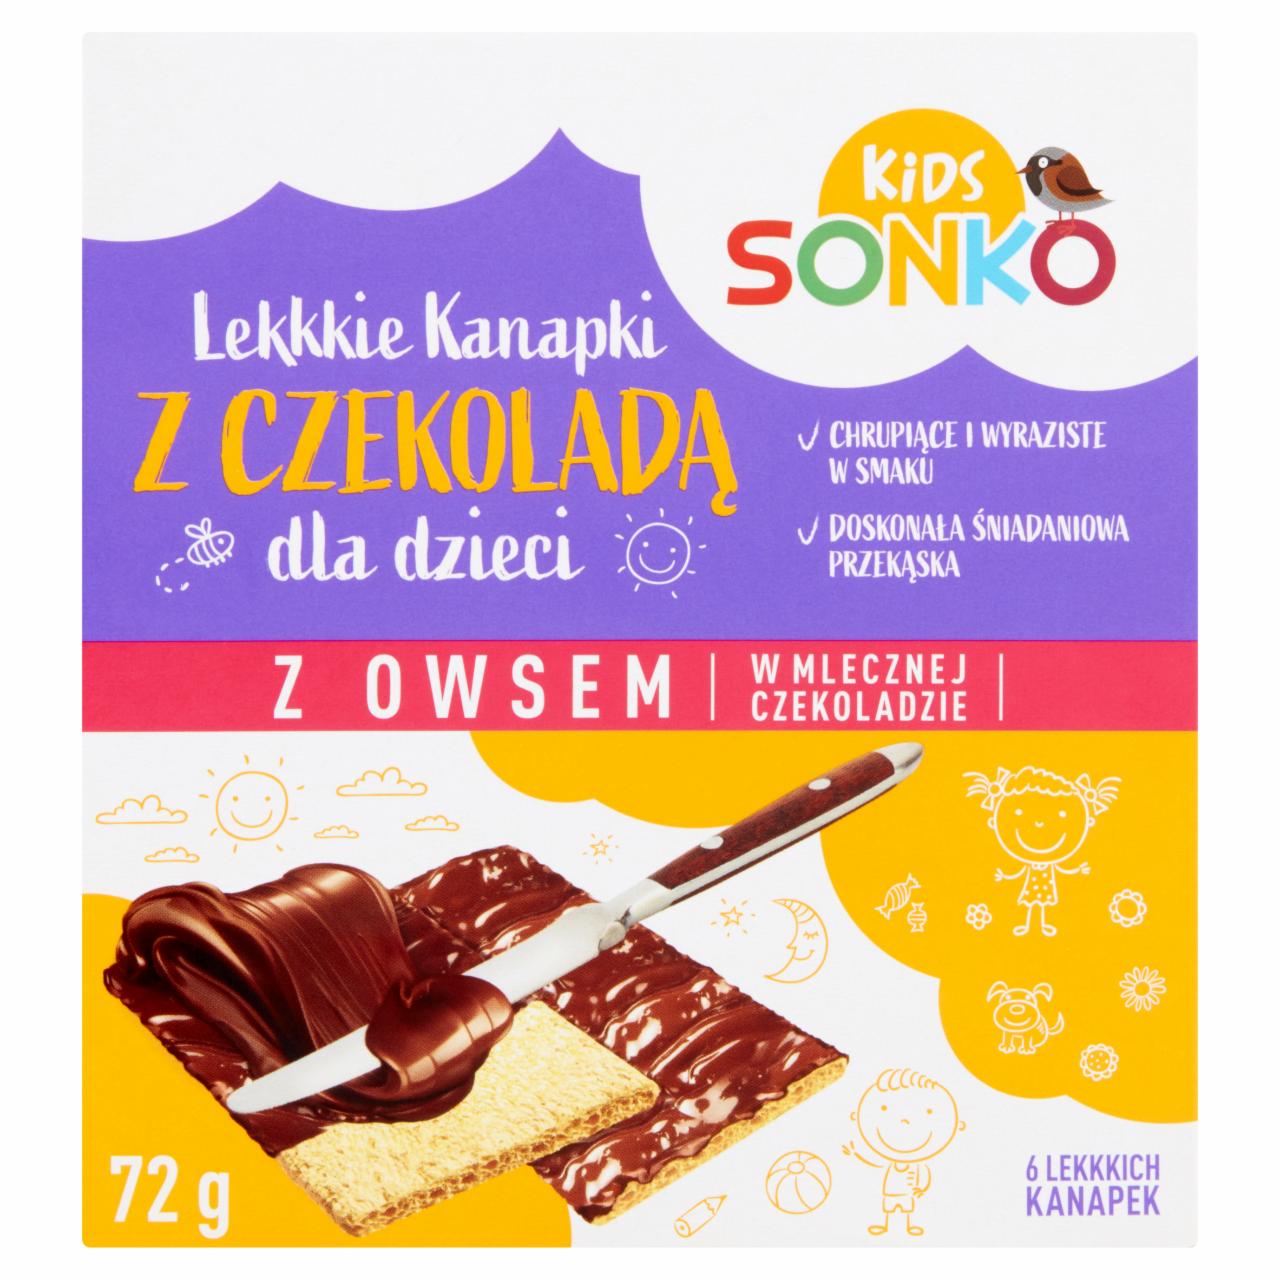 Zdjęcia - Sonko Kids Lekkkie kanapki z owsem w mlecznej czekoladzie 72 g